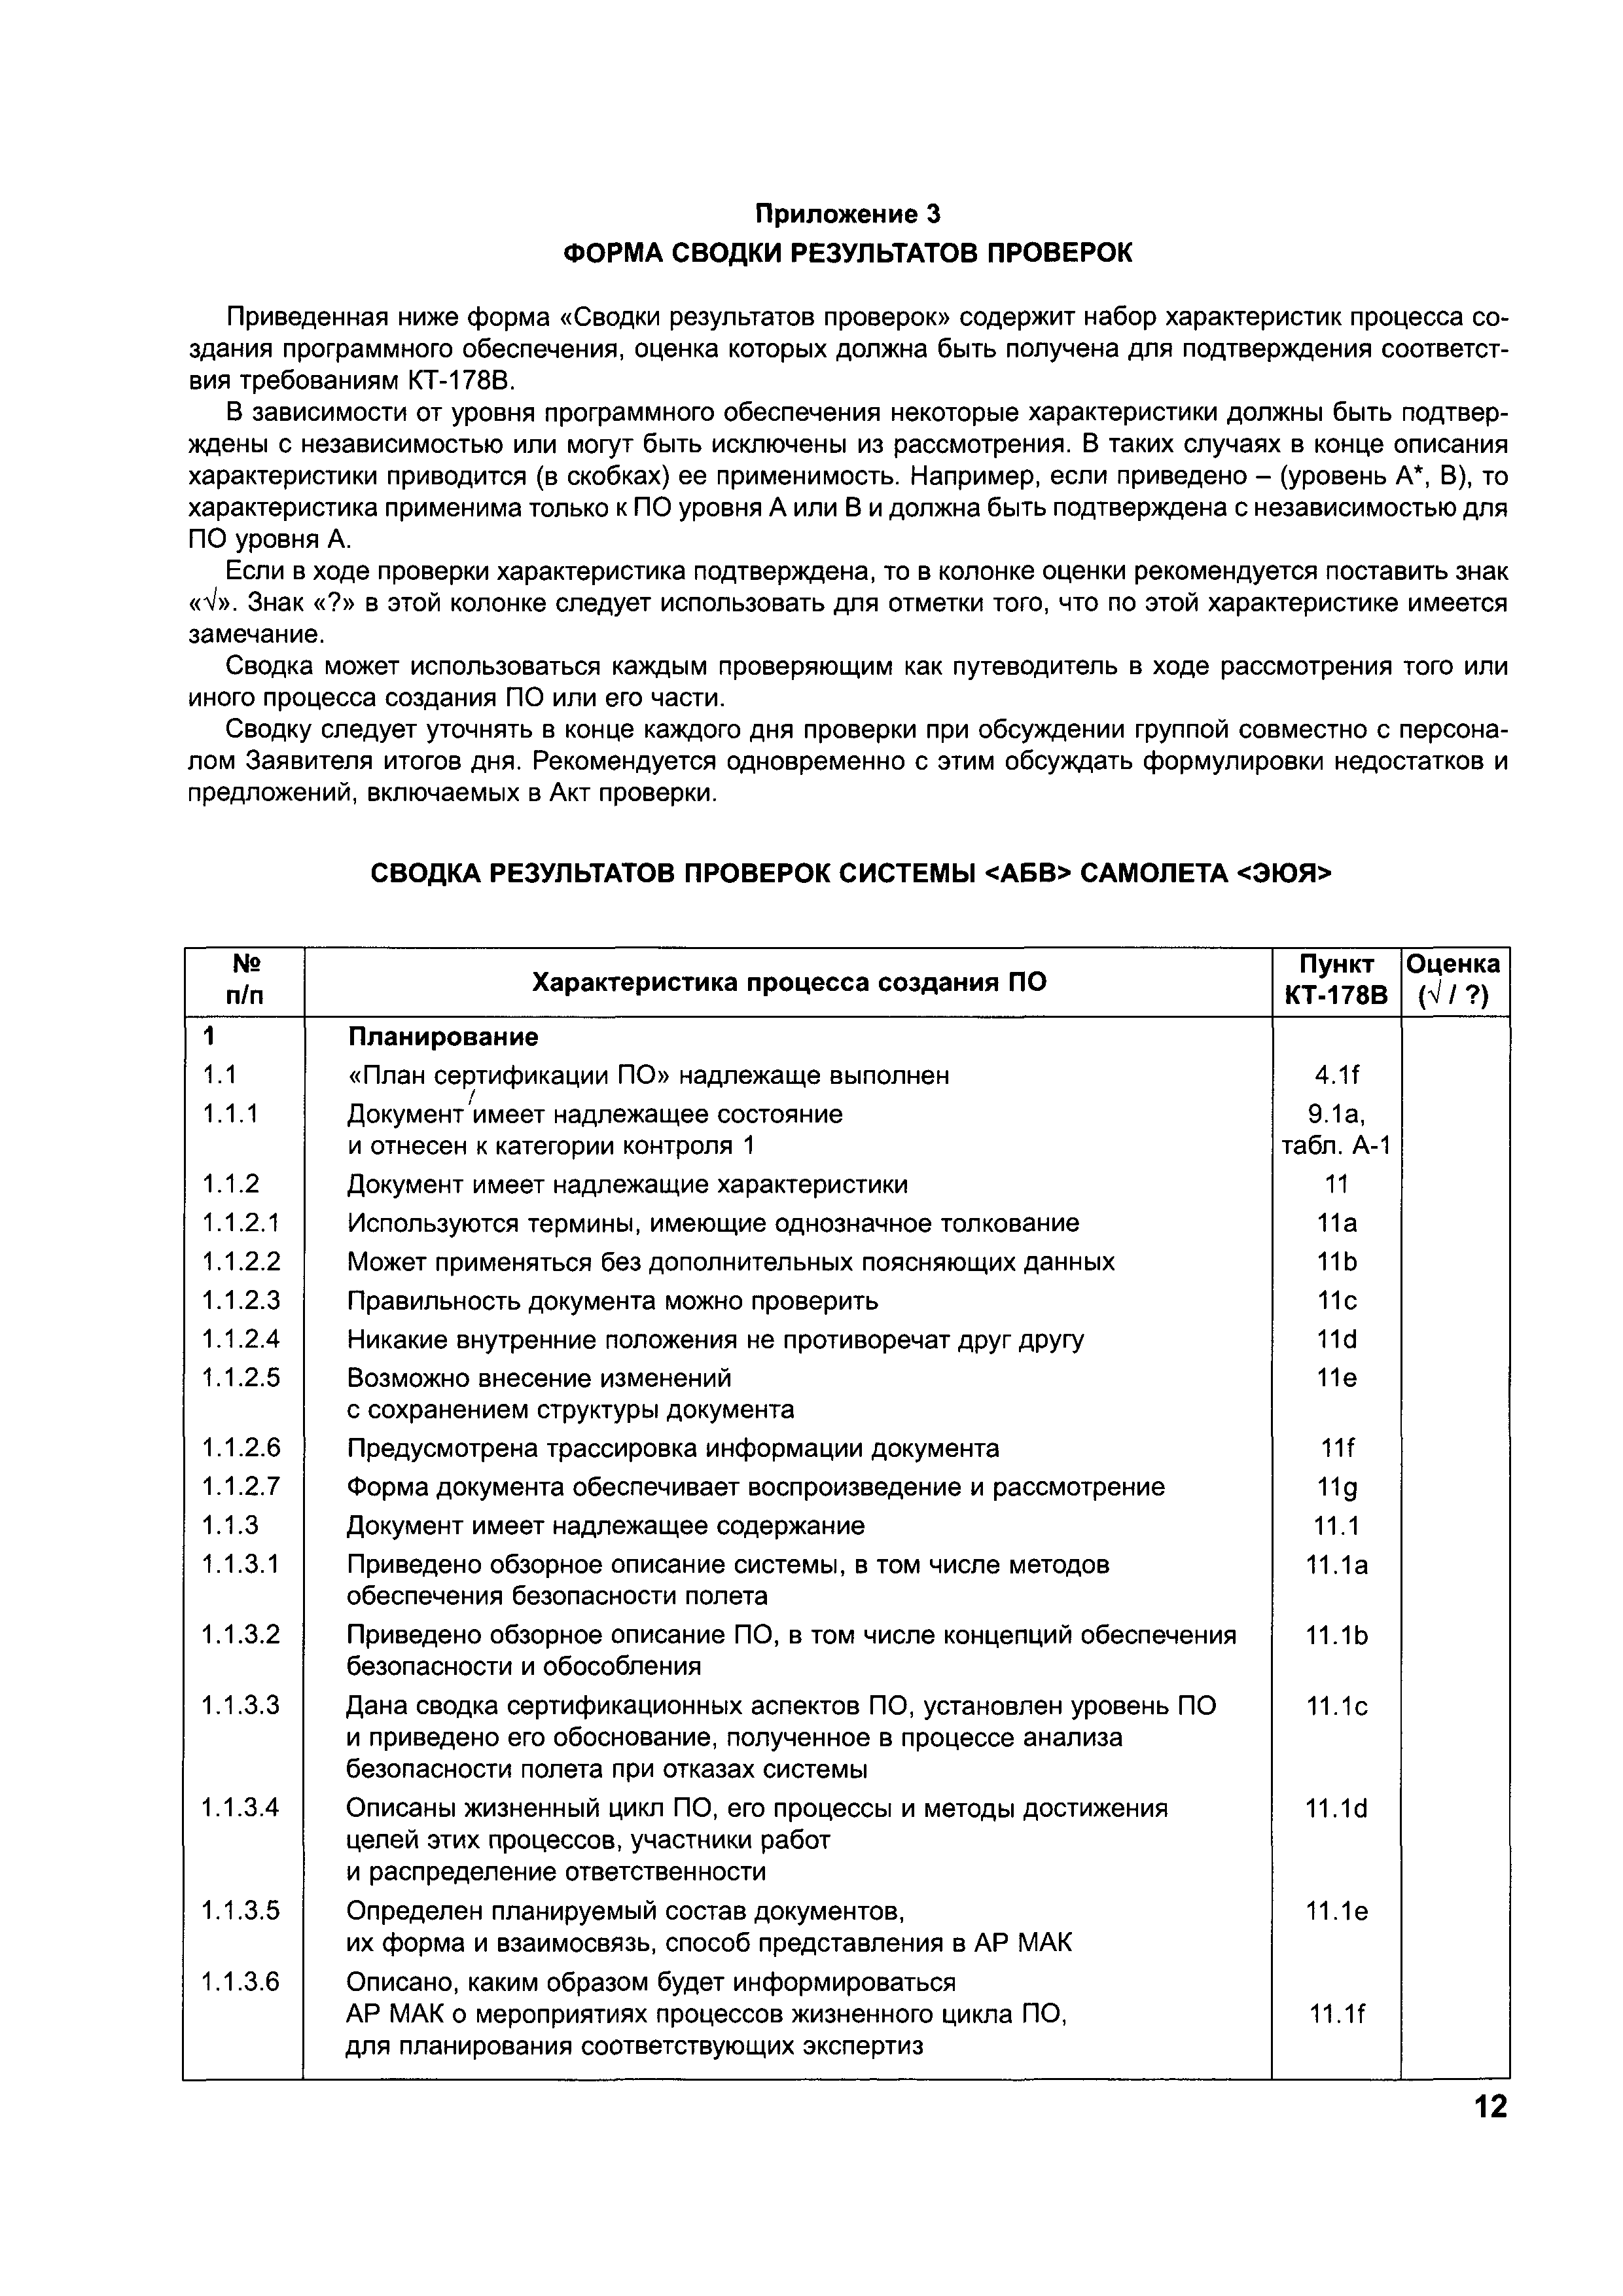 Директивное письмо 07-2004